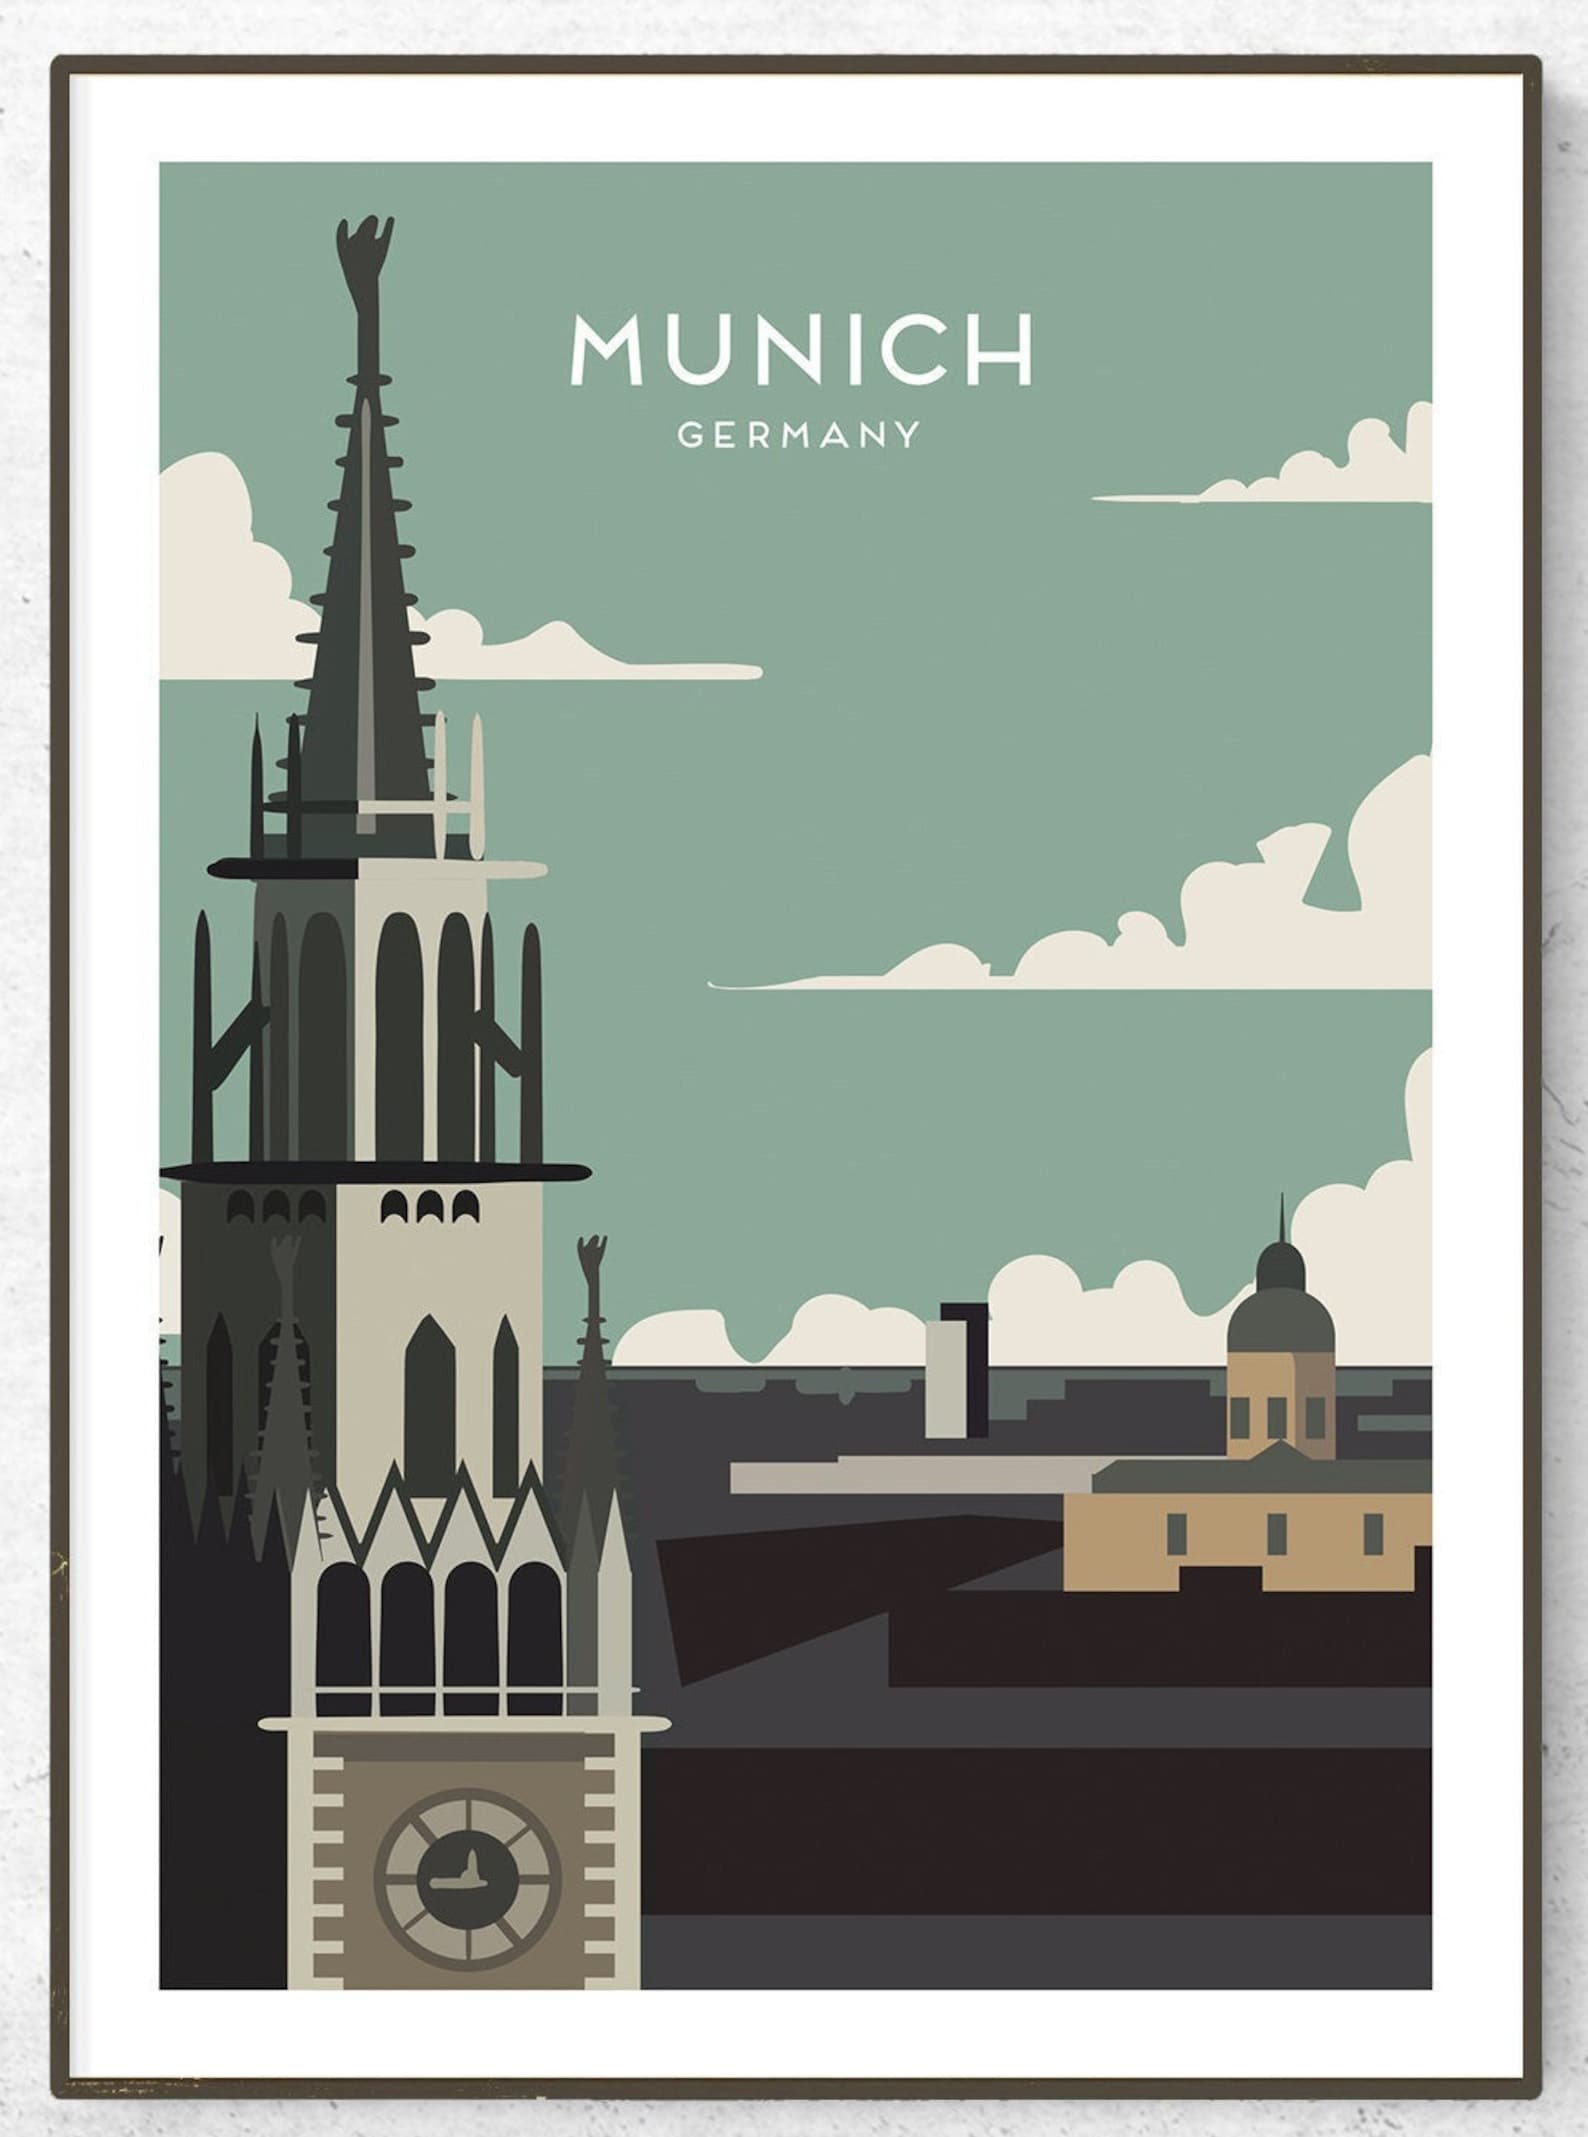 munich vintage travel poster